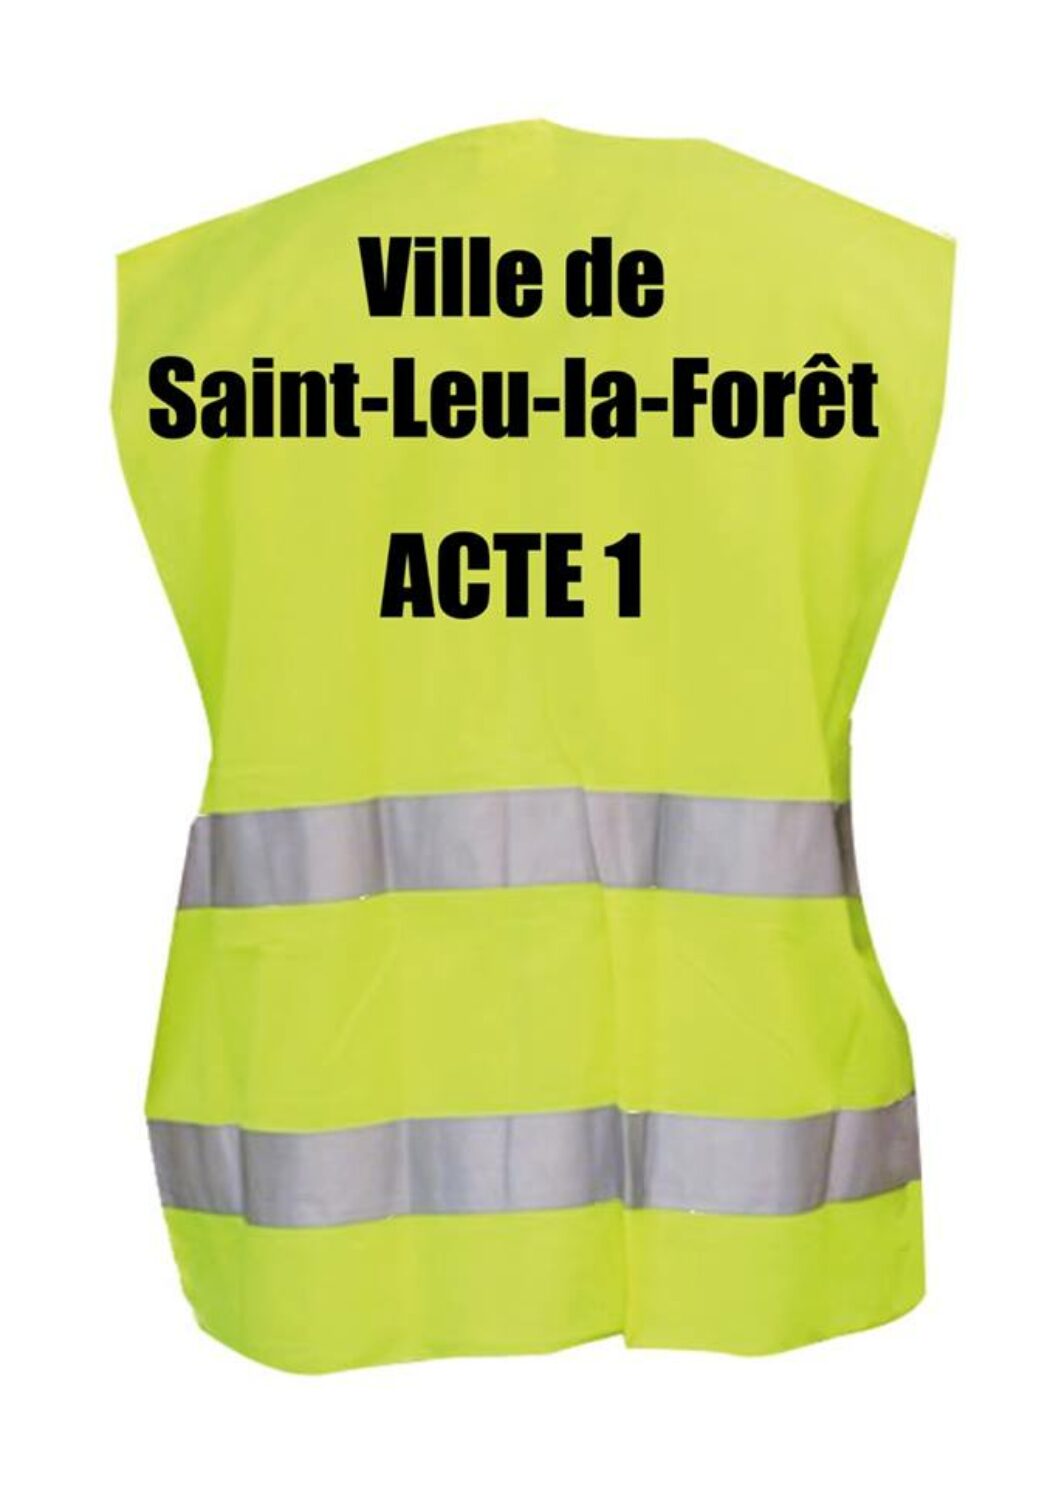 Saint-Leu-la-Forêt (95) : La préfecture refuse un projet de crèche et impose en catimini un centre d’hébergement d’urgence